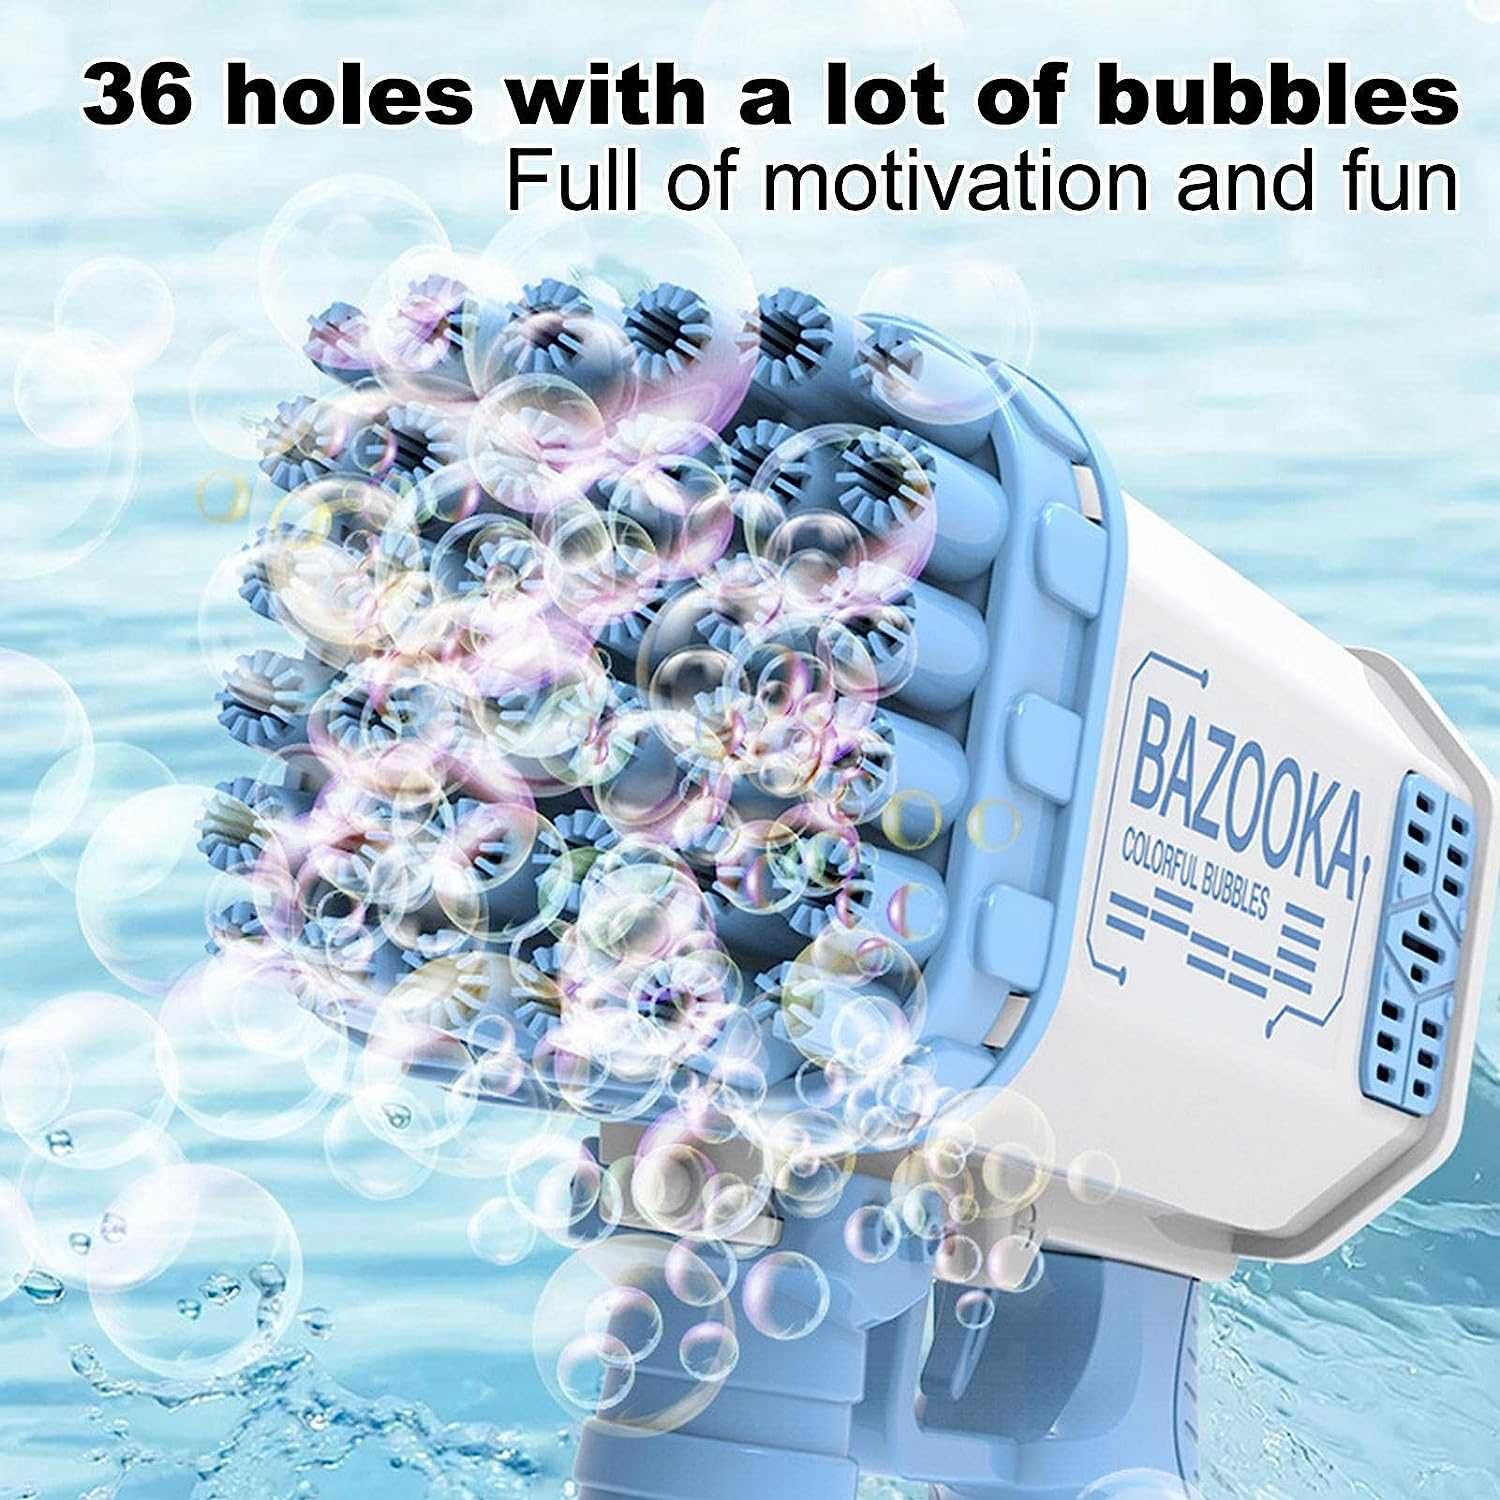 Генератор мильних бульбашок базука, має 36 отворів.BAZOOKA BUBBLE